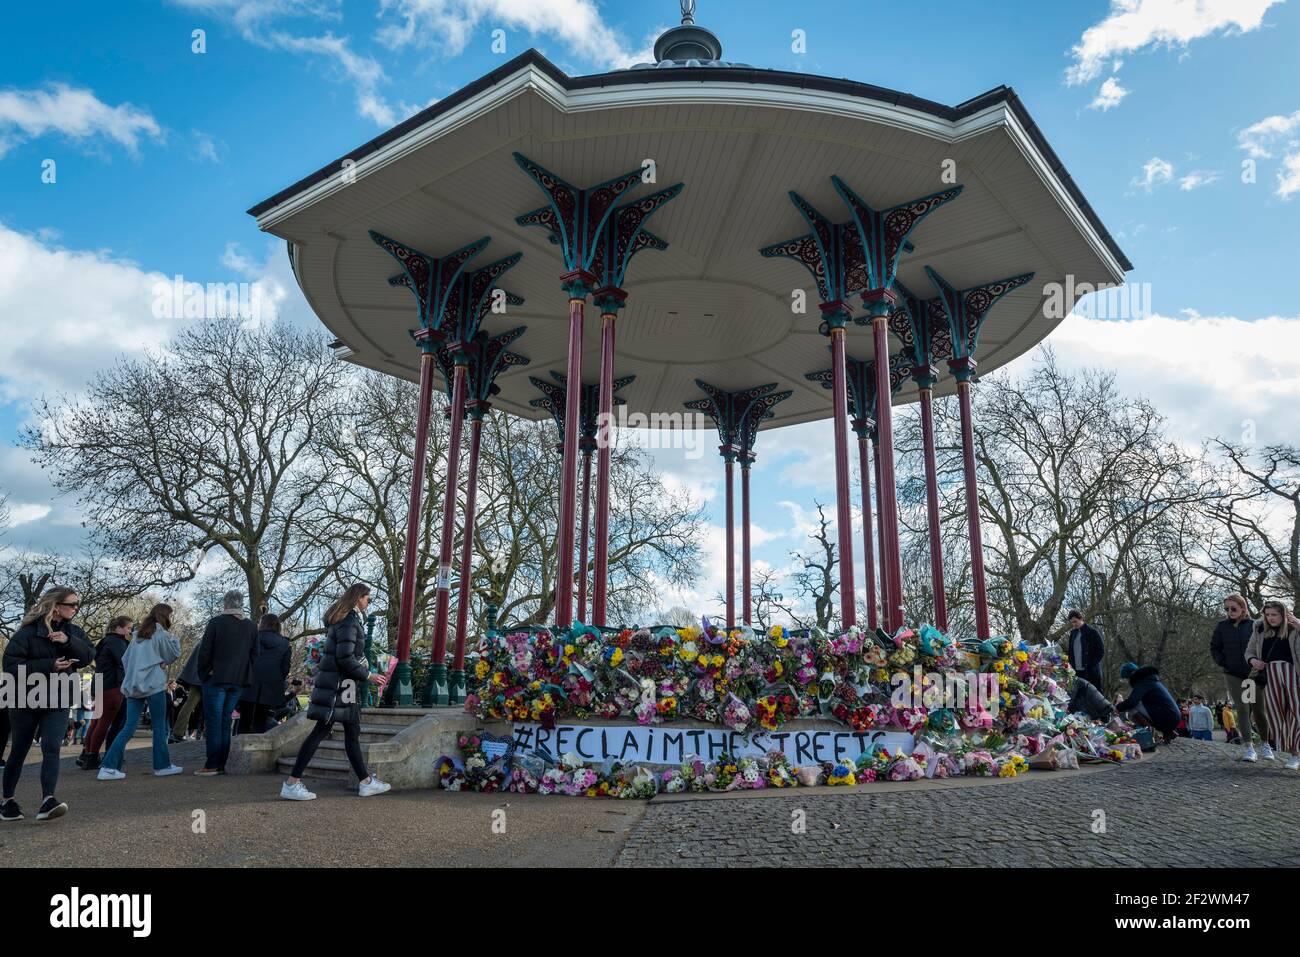 Londres, Reino Unido. 13 de marzo de 2021. La gente deposita tributos florales en el bandstand de Clapham Common para recordar a Sarah Everard. Wayne Couzens, de 48 años, un oficial de policía de Wet, ha sido acusado de su secuestro y asesinato después de que ella caminara a casa cerca de Clapham Common en el sur de Londres. El cuerpo de la niña de 33 años fue encontrada en los bosques de Kent más de una semana después de que fue avistada por última vez el 3 de marzo. Crédito: Stephen Chung / Alamy Live News Foto de stock